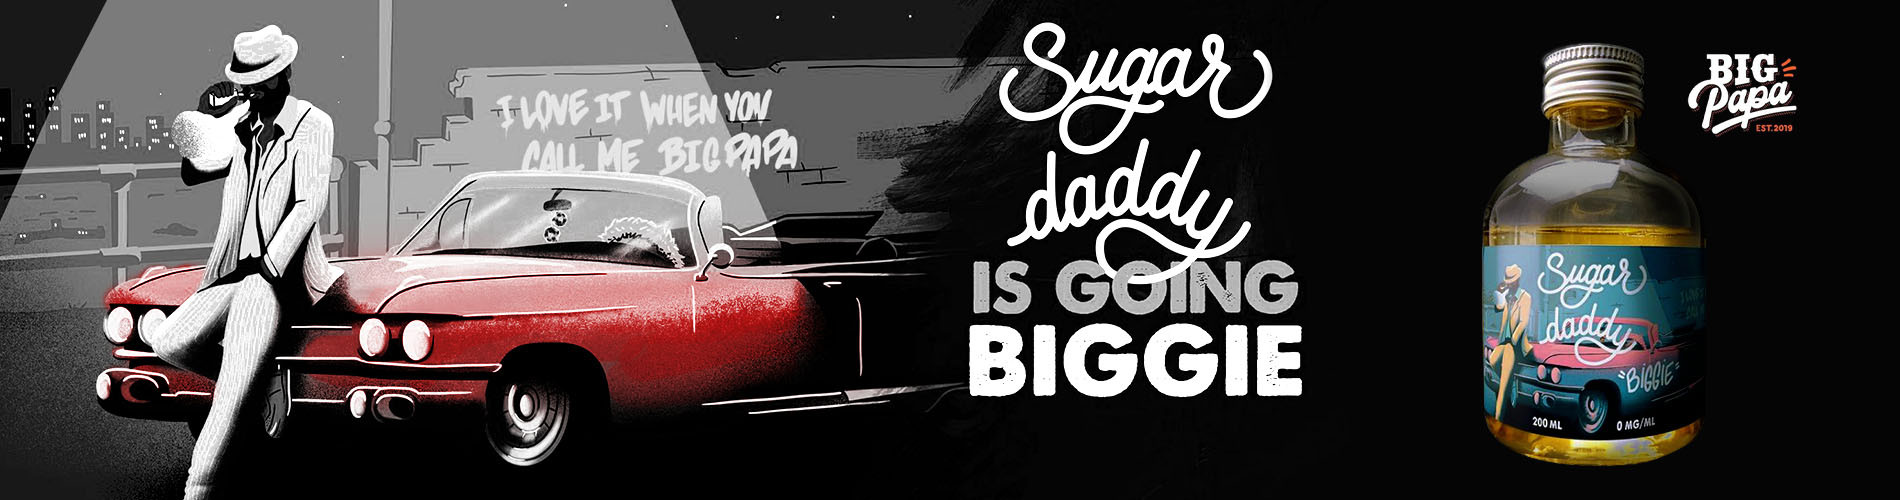 Sugar Daddy “Biggie” 200ml - Big Papa